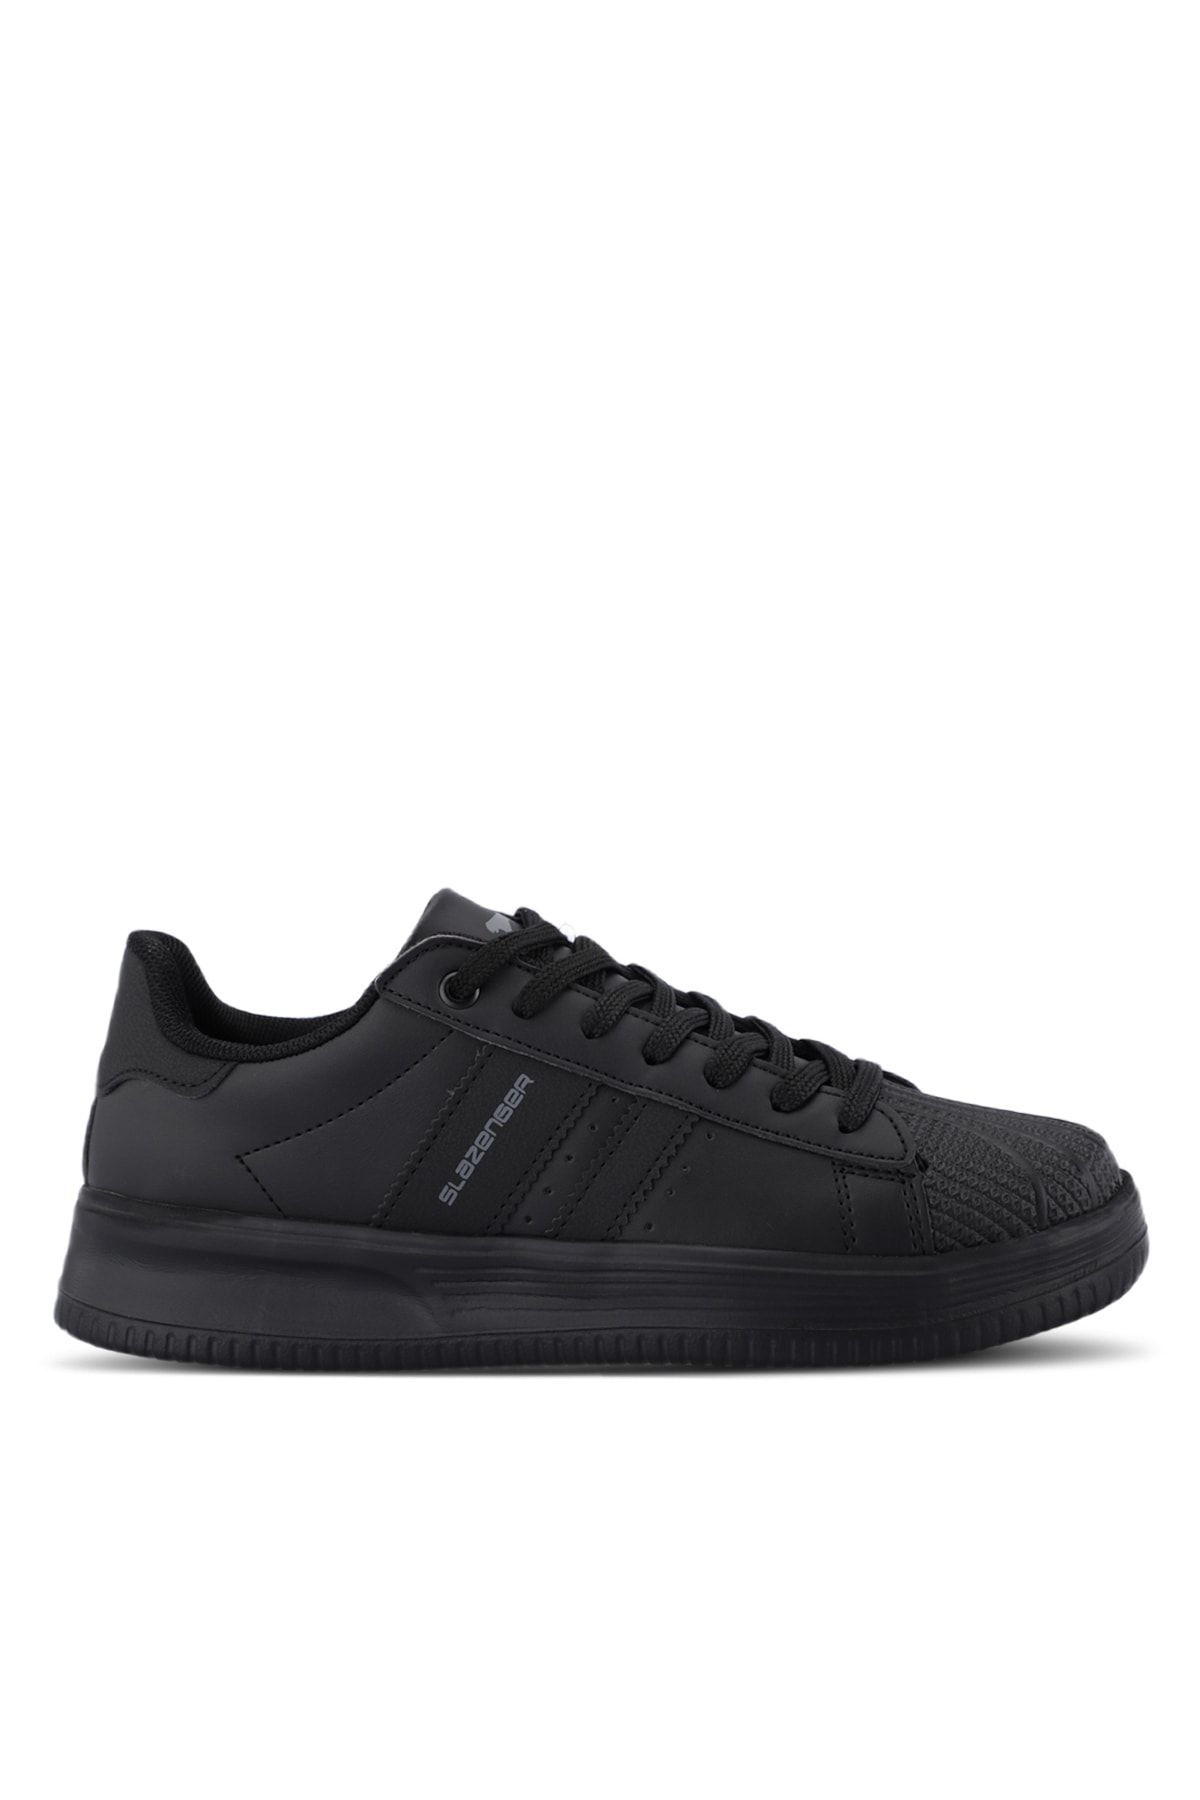 Slazenger ZENO Sneaker Kadın Ayakkabı Siyah / Siyah